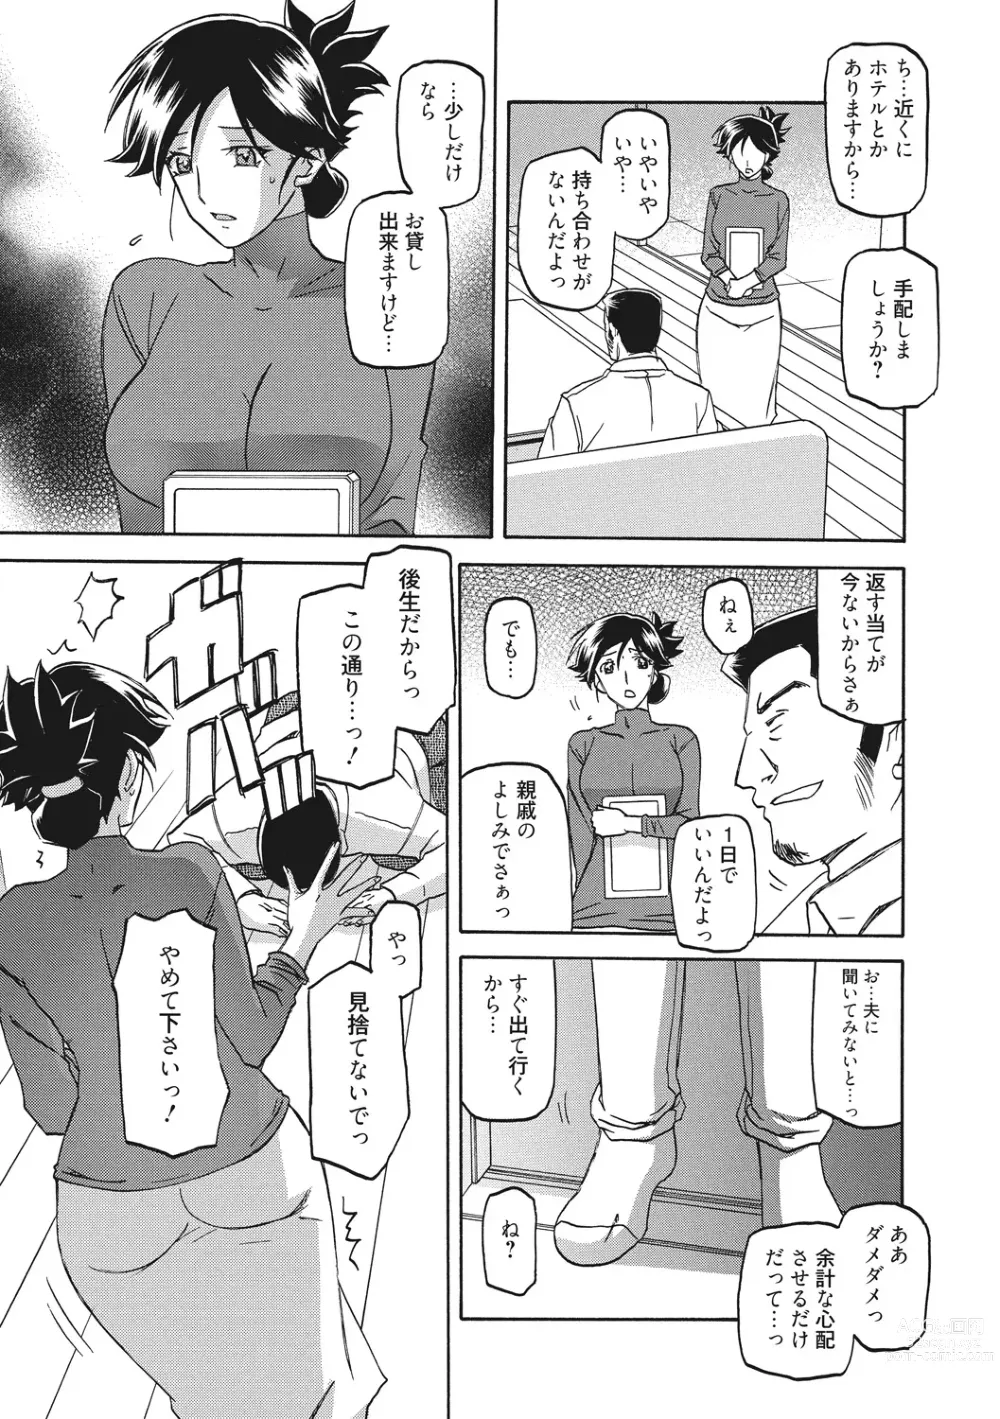 Page 15 of manga Gekkakou no Ori